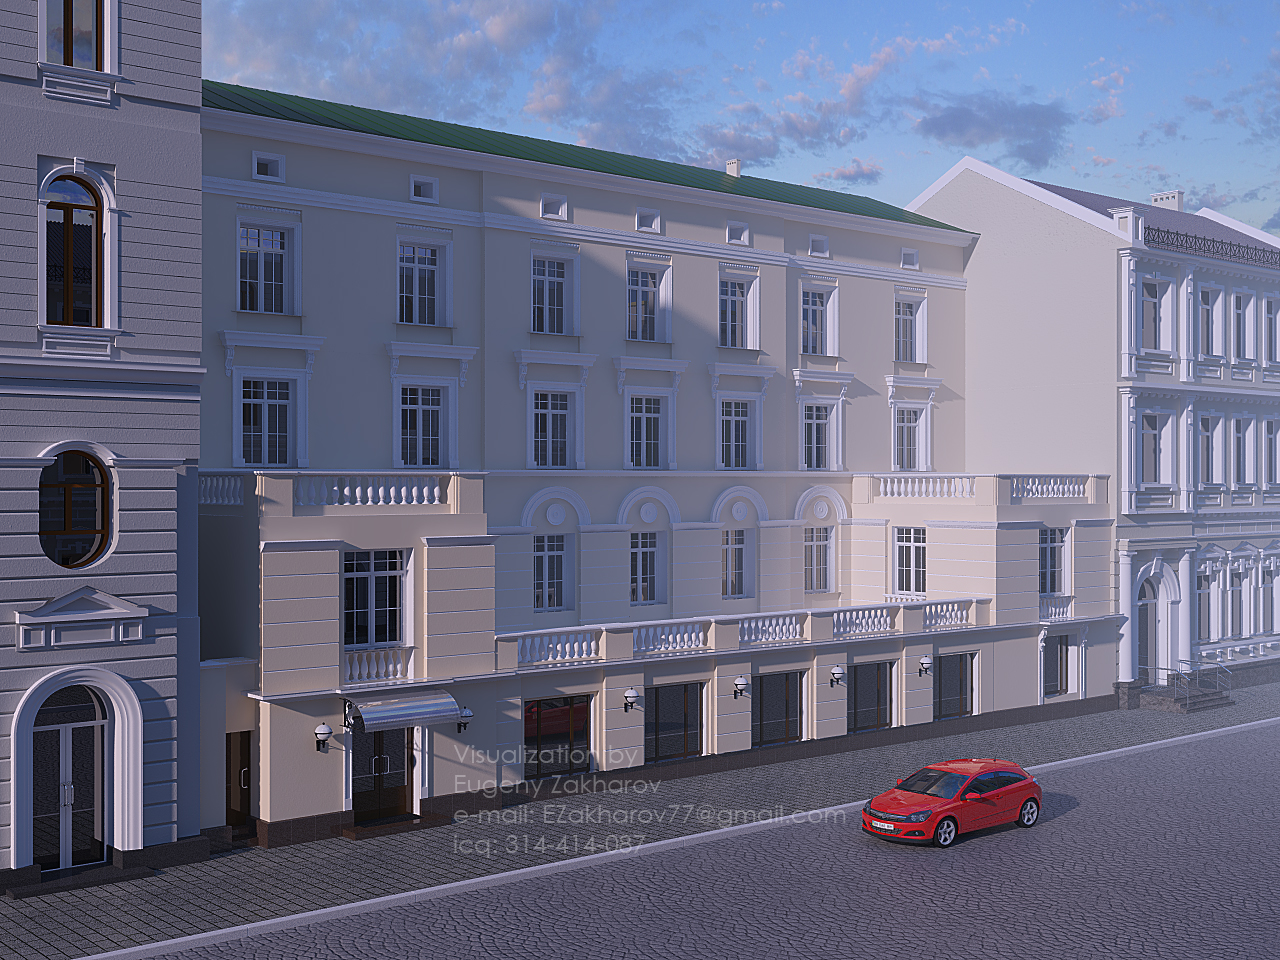 Визуализация фасада здания во Львове